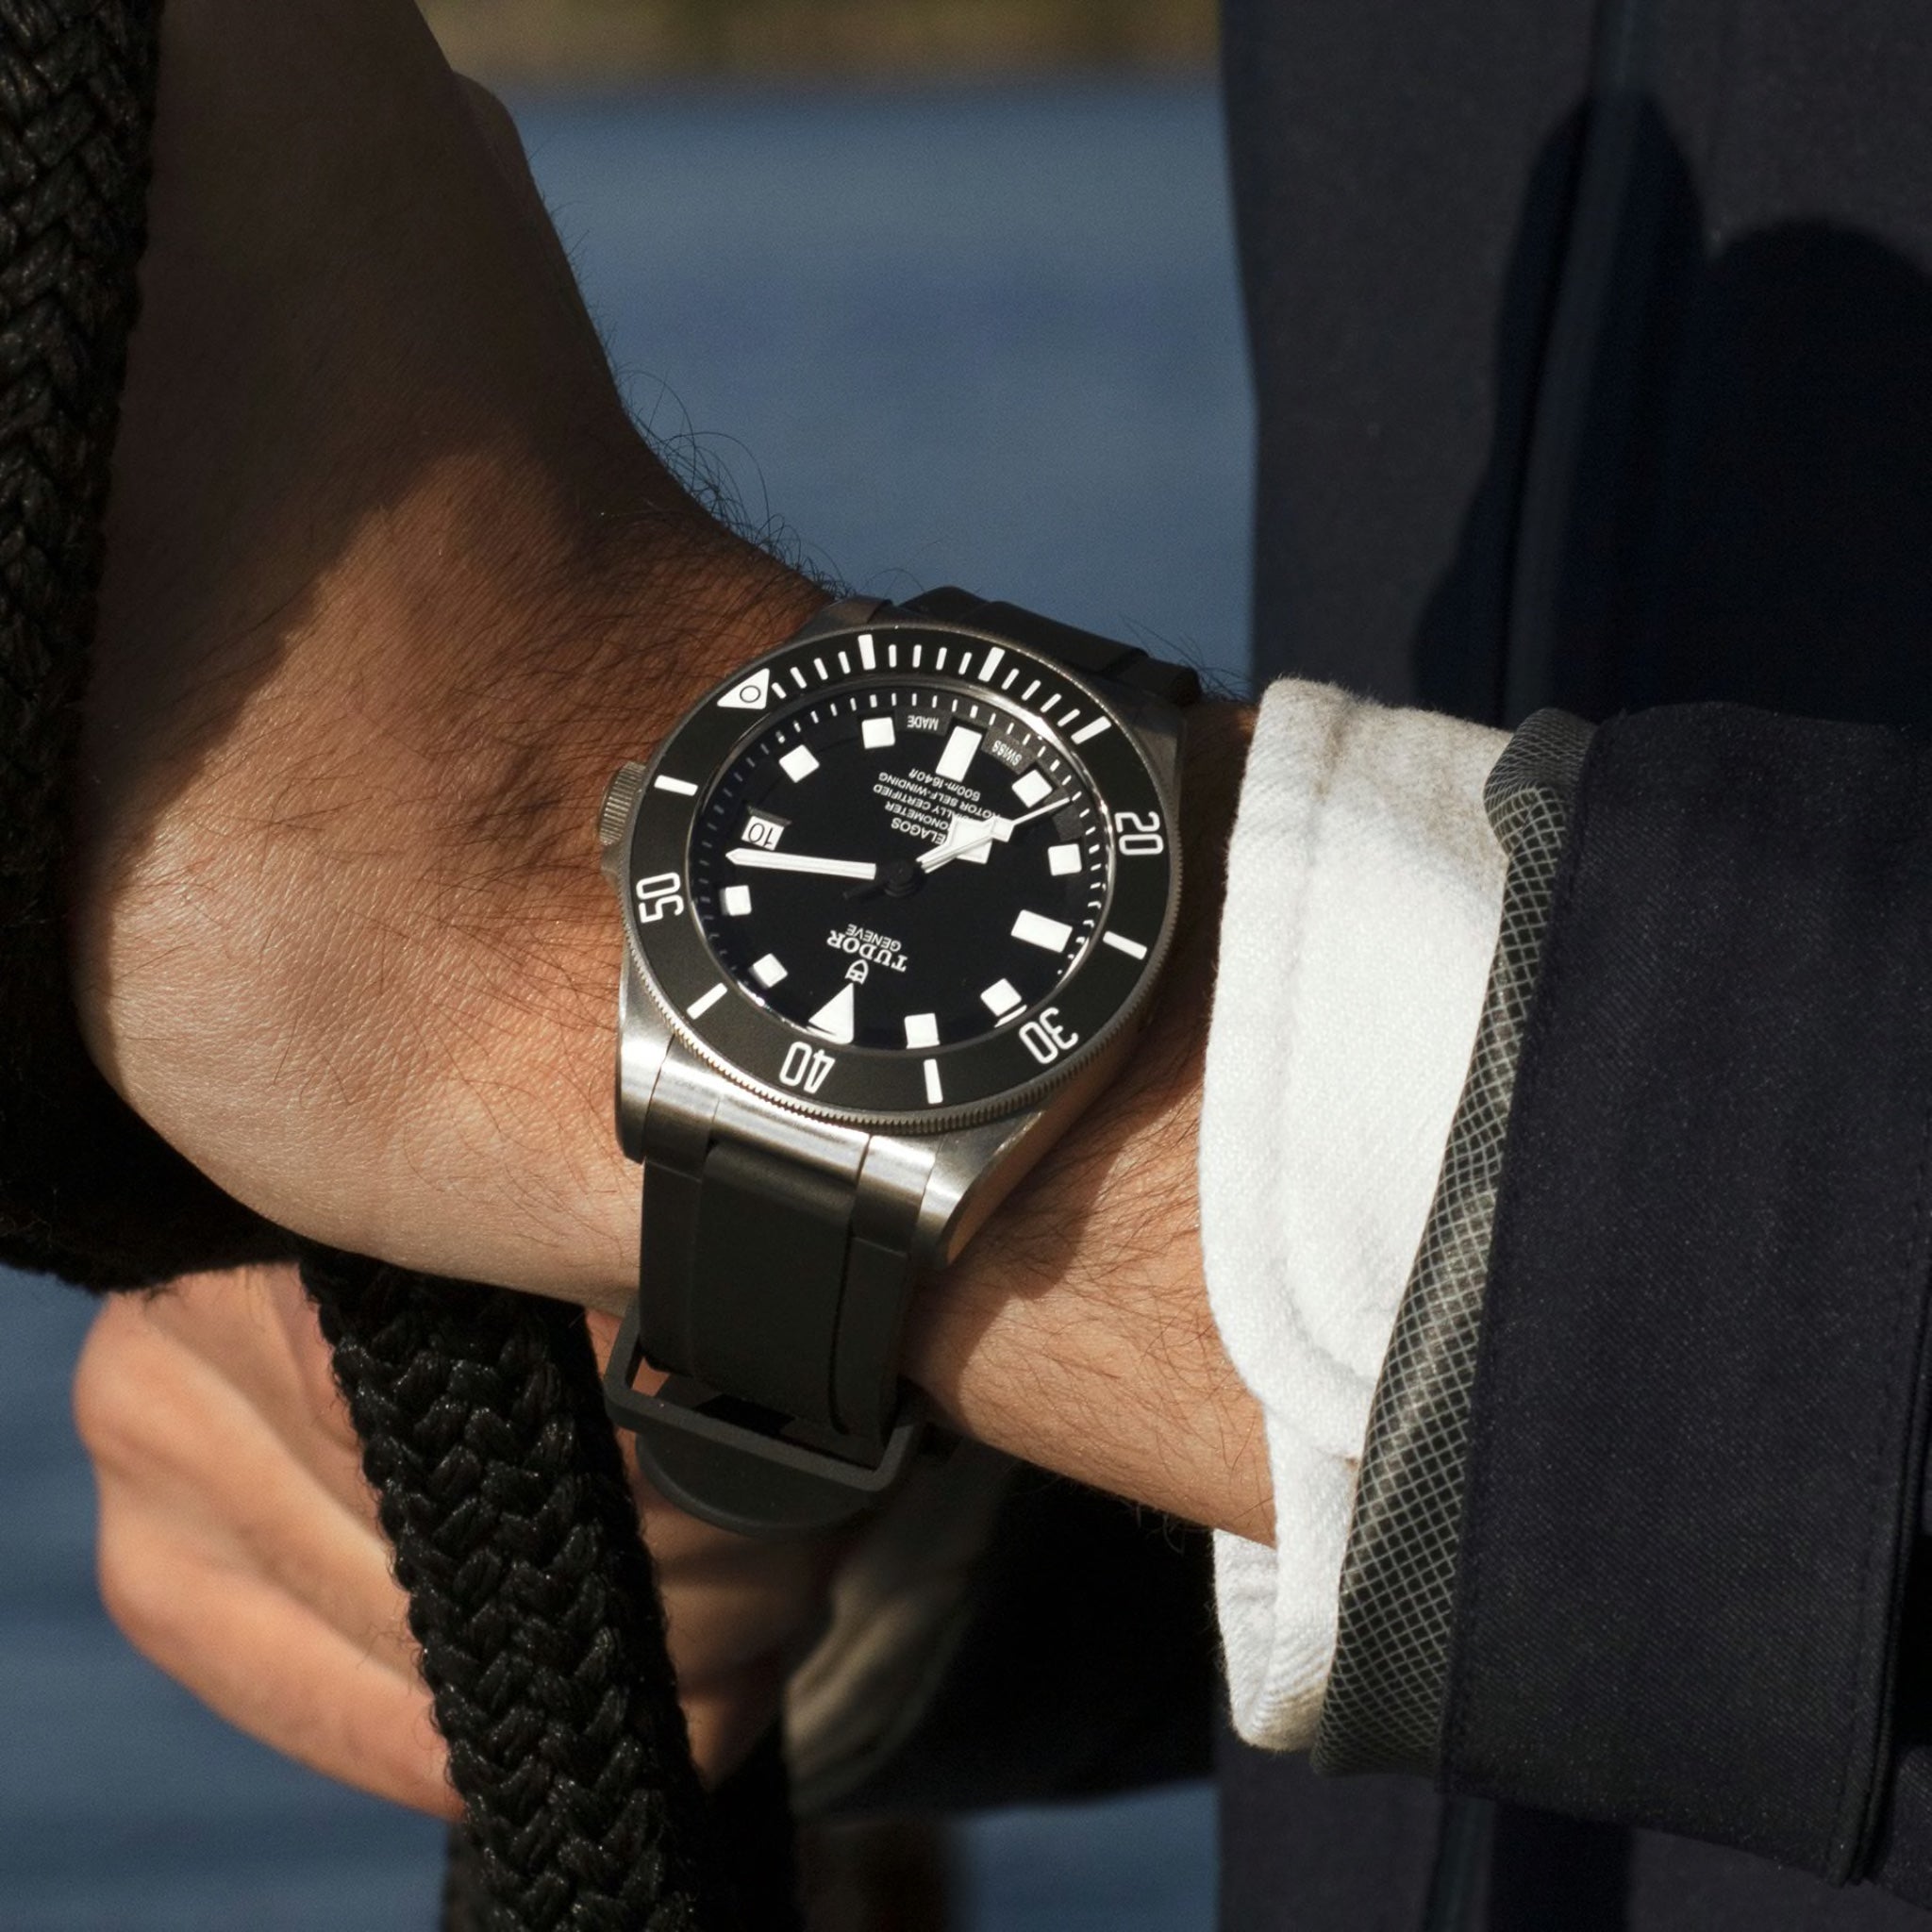 Tudor Pelagos 42 Black Titanium Watch M25600TN